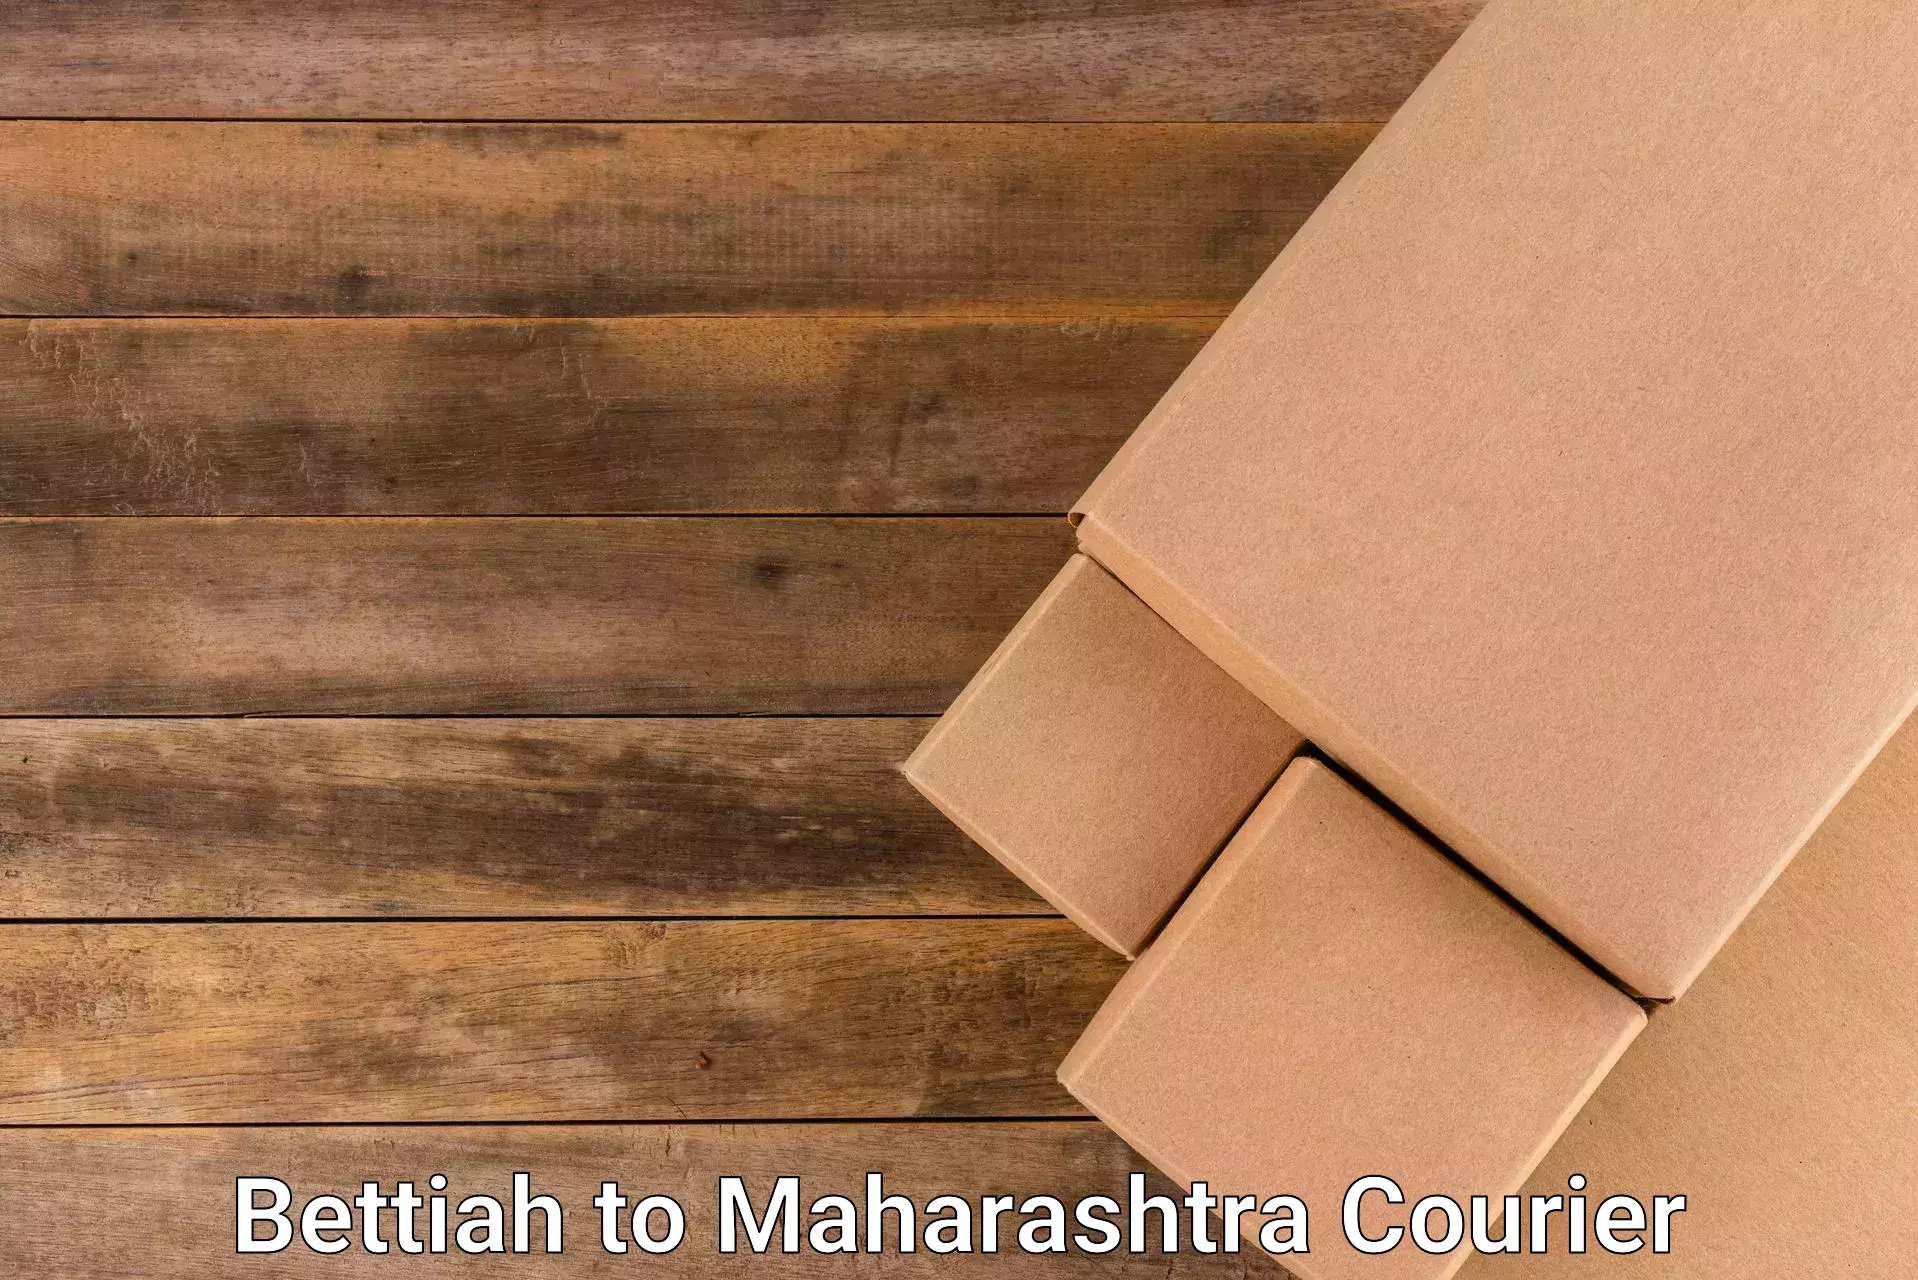 Urgent courier needs Bettiah to Paithan